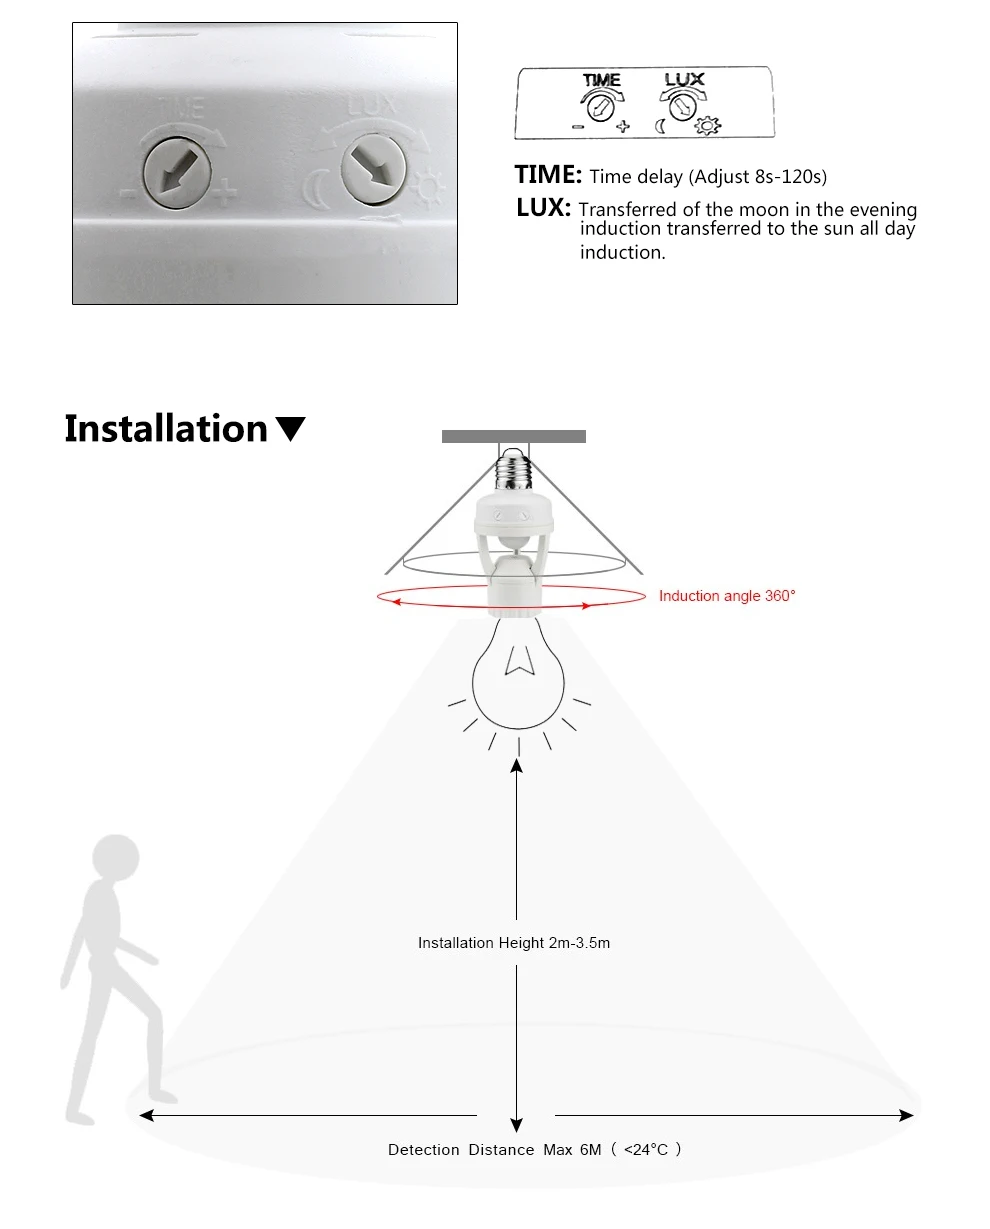 E27 лампа база радар микроволновая печь/PIR человеческого тела Инфракрасный датчик движения держатель лампы Переключатель светильник датчик